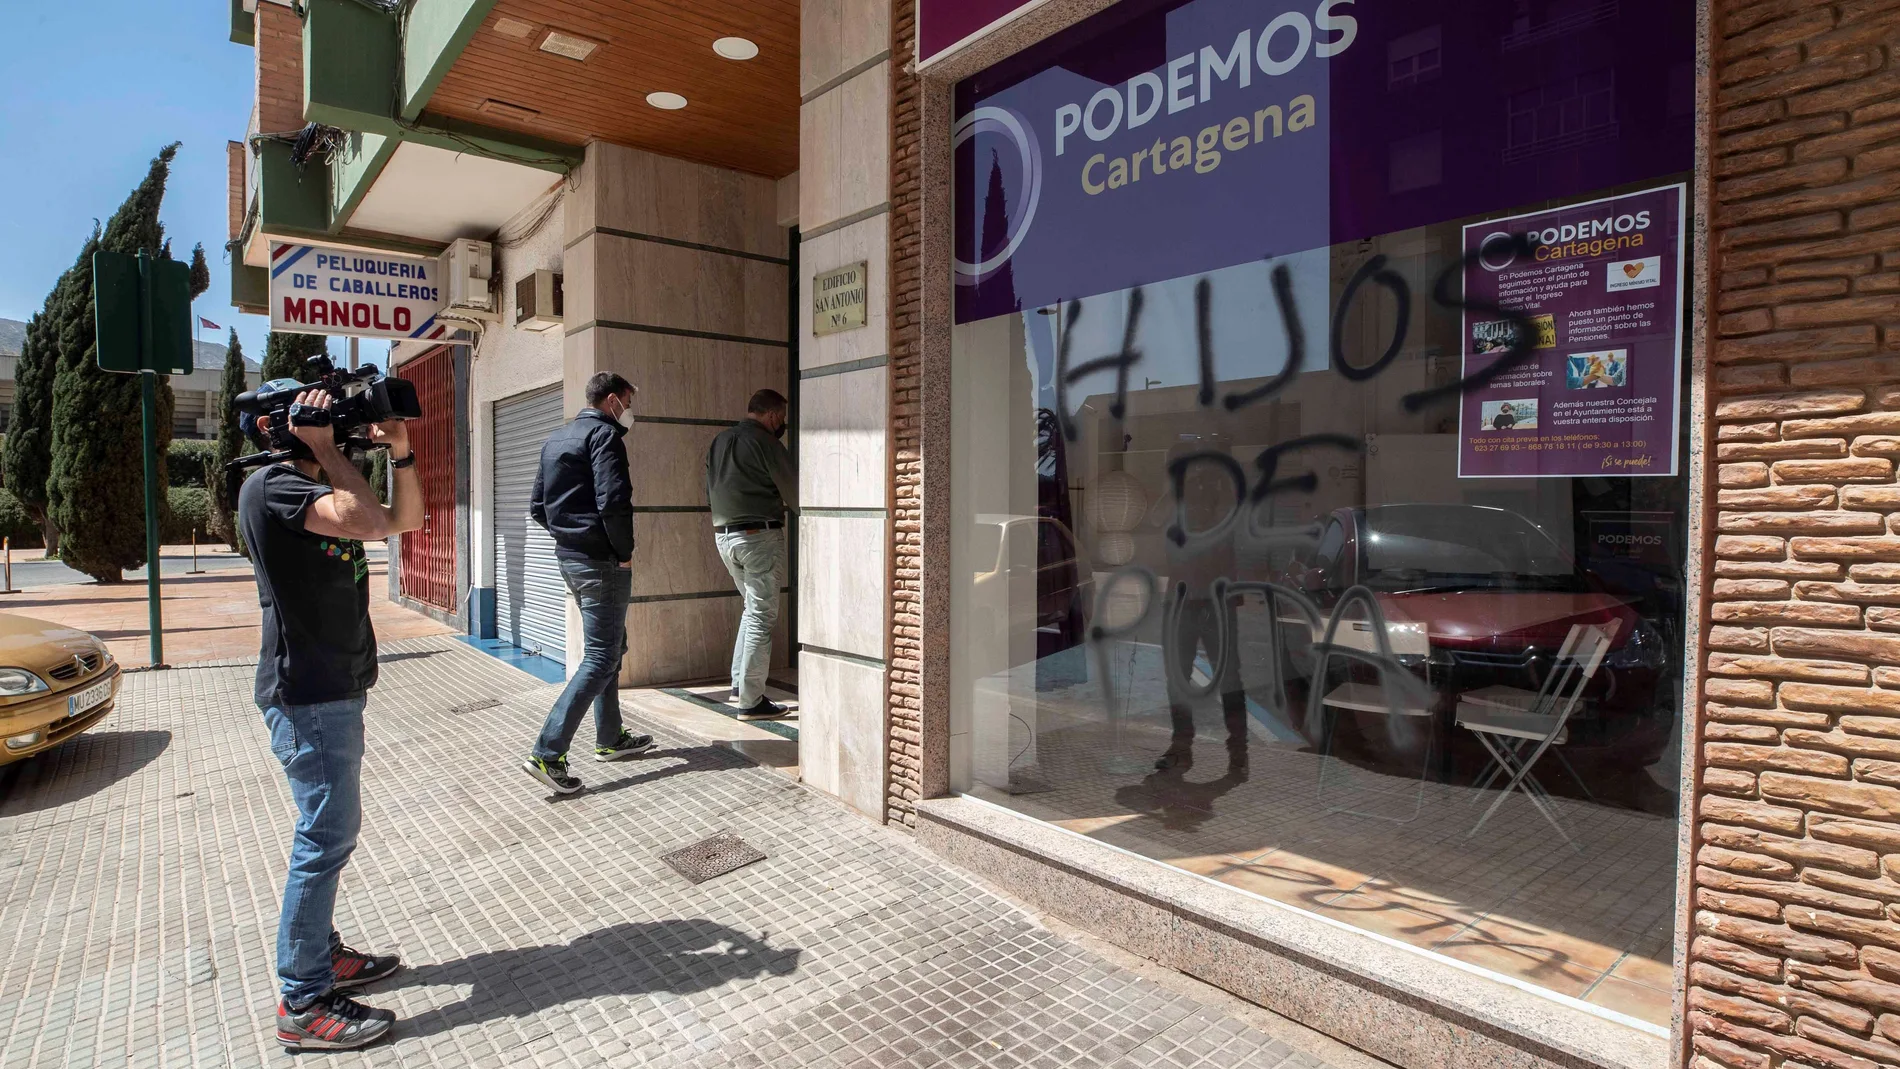 Pintada en la sede de Podemos en Cartagena tras ser atacada la semana pasada con un cóctel molotov, según un vídeo que ha subido a Twitter el secretario general nacional del partido, Pablo Iglesias, en el que atribuye el ataque al "terrorismo callejero de la ultraderecha"